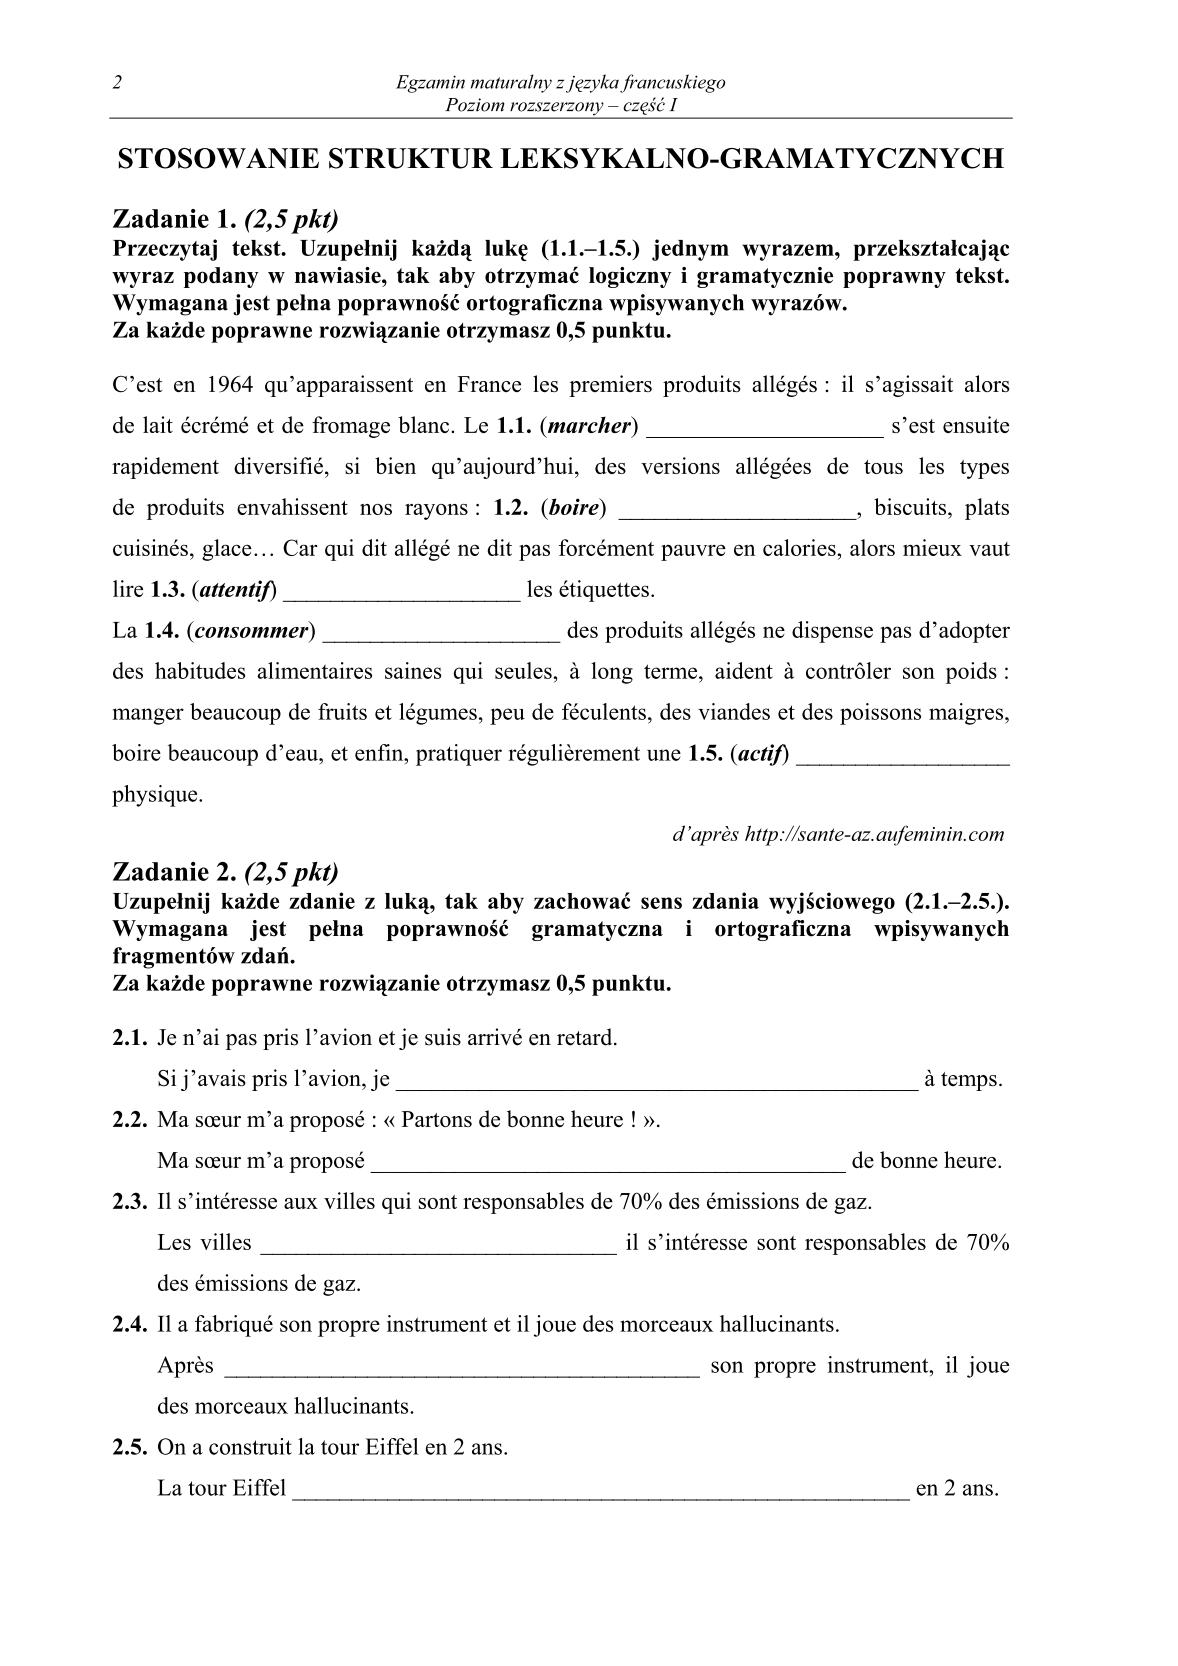 pytania-jezyk-francuski-poziom-rozszerzony-czesc-I-matura-2014-str.2